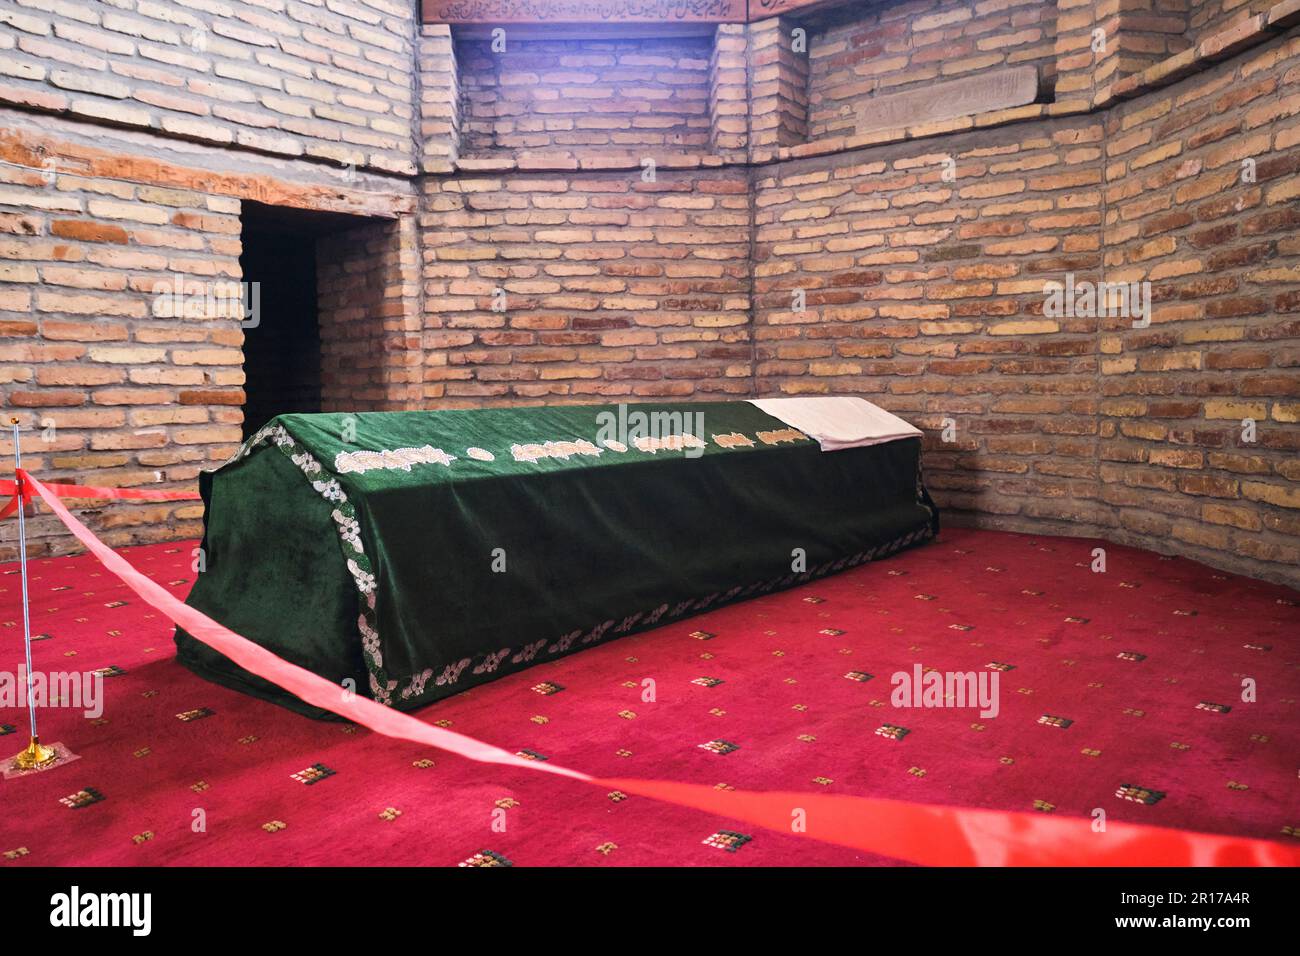 Tomba avvolta in tessuto verde, all'interno del mausoleo del Santuario di Abu Bakr Kaffal Shashi. Presso il complesso Hazrati Imam a Tashkent, Uzbekistan. Foto Stock